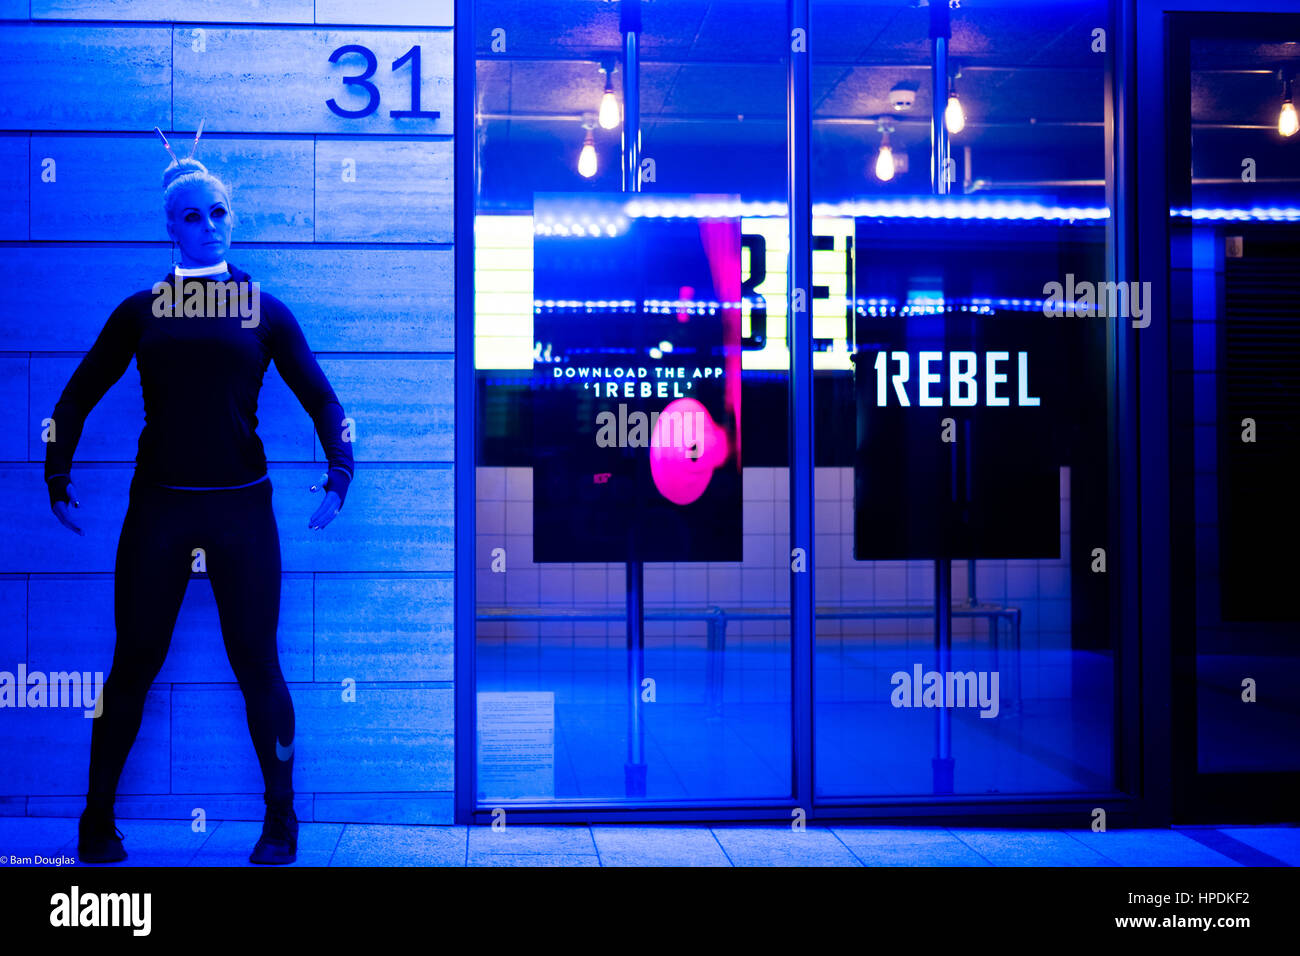 A cyberpunk themed fashion shoot at night Stock Photo